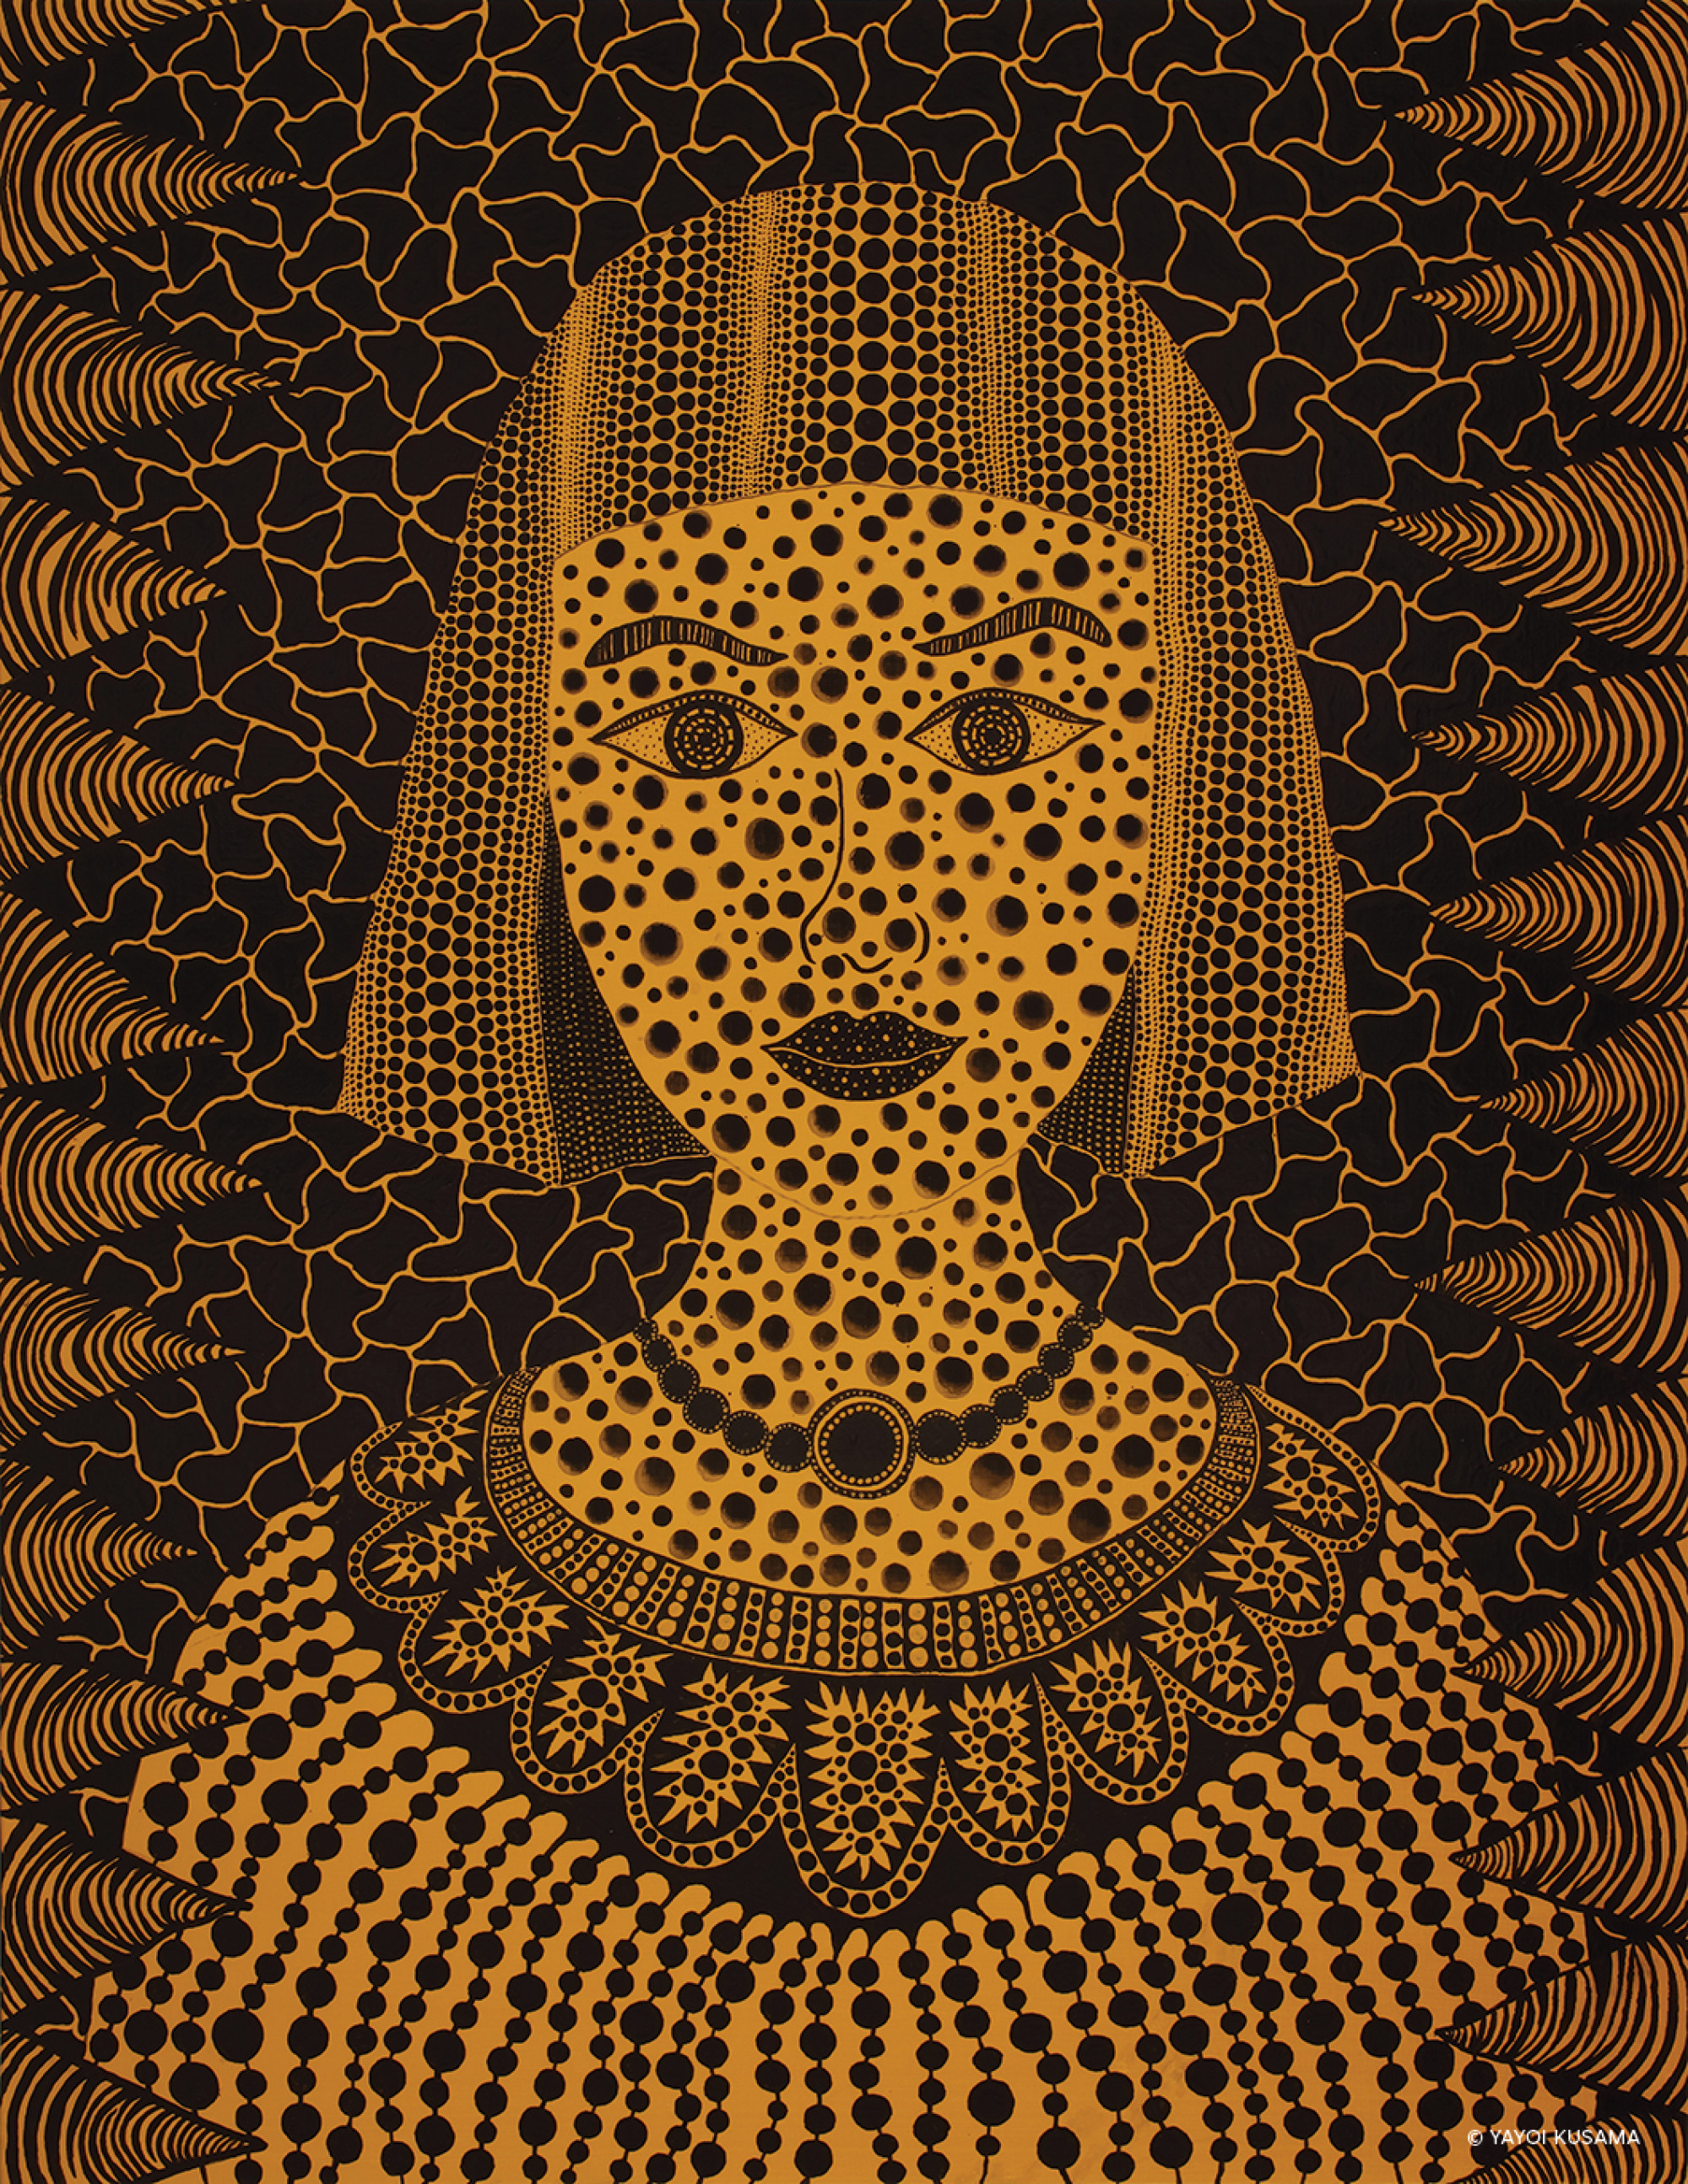 Yayoi Kusama: Her world of polka dots - Art & Culture - The Jakarta Post